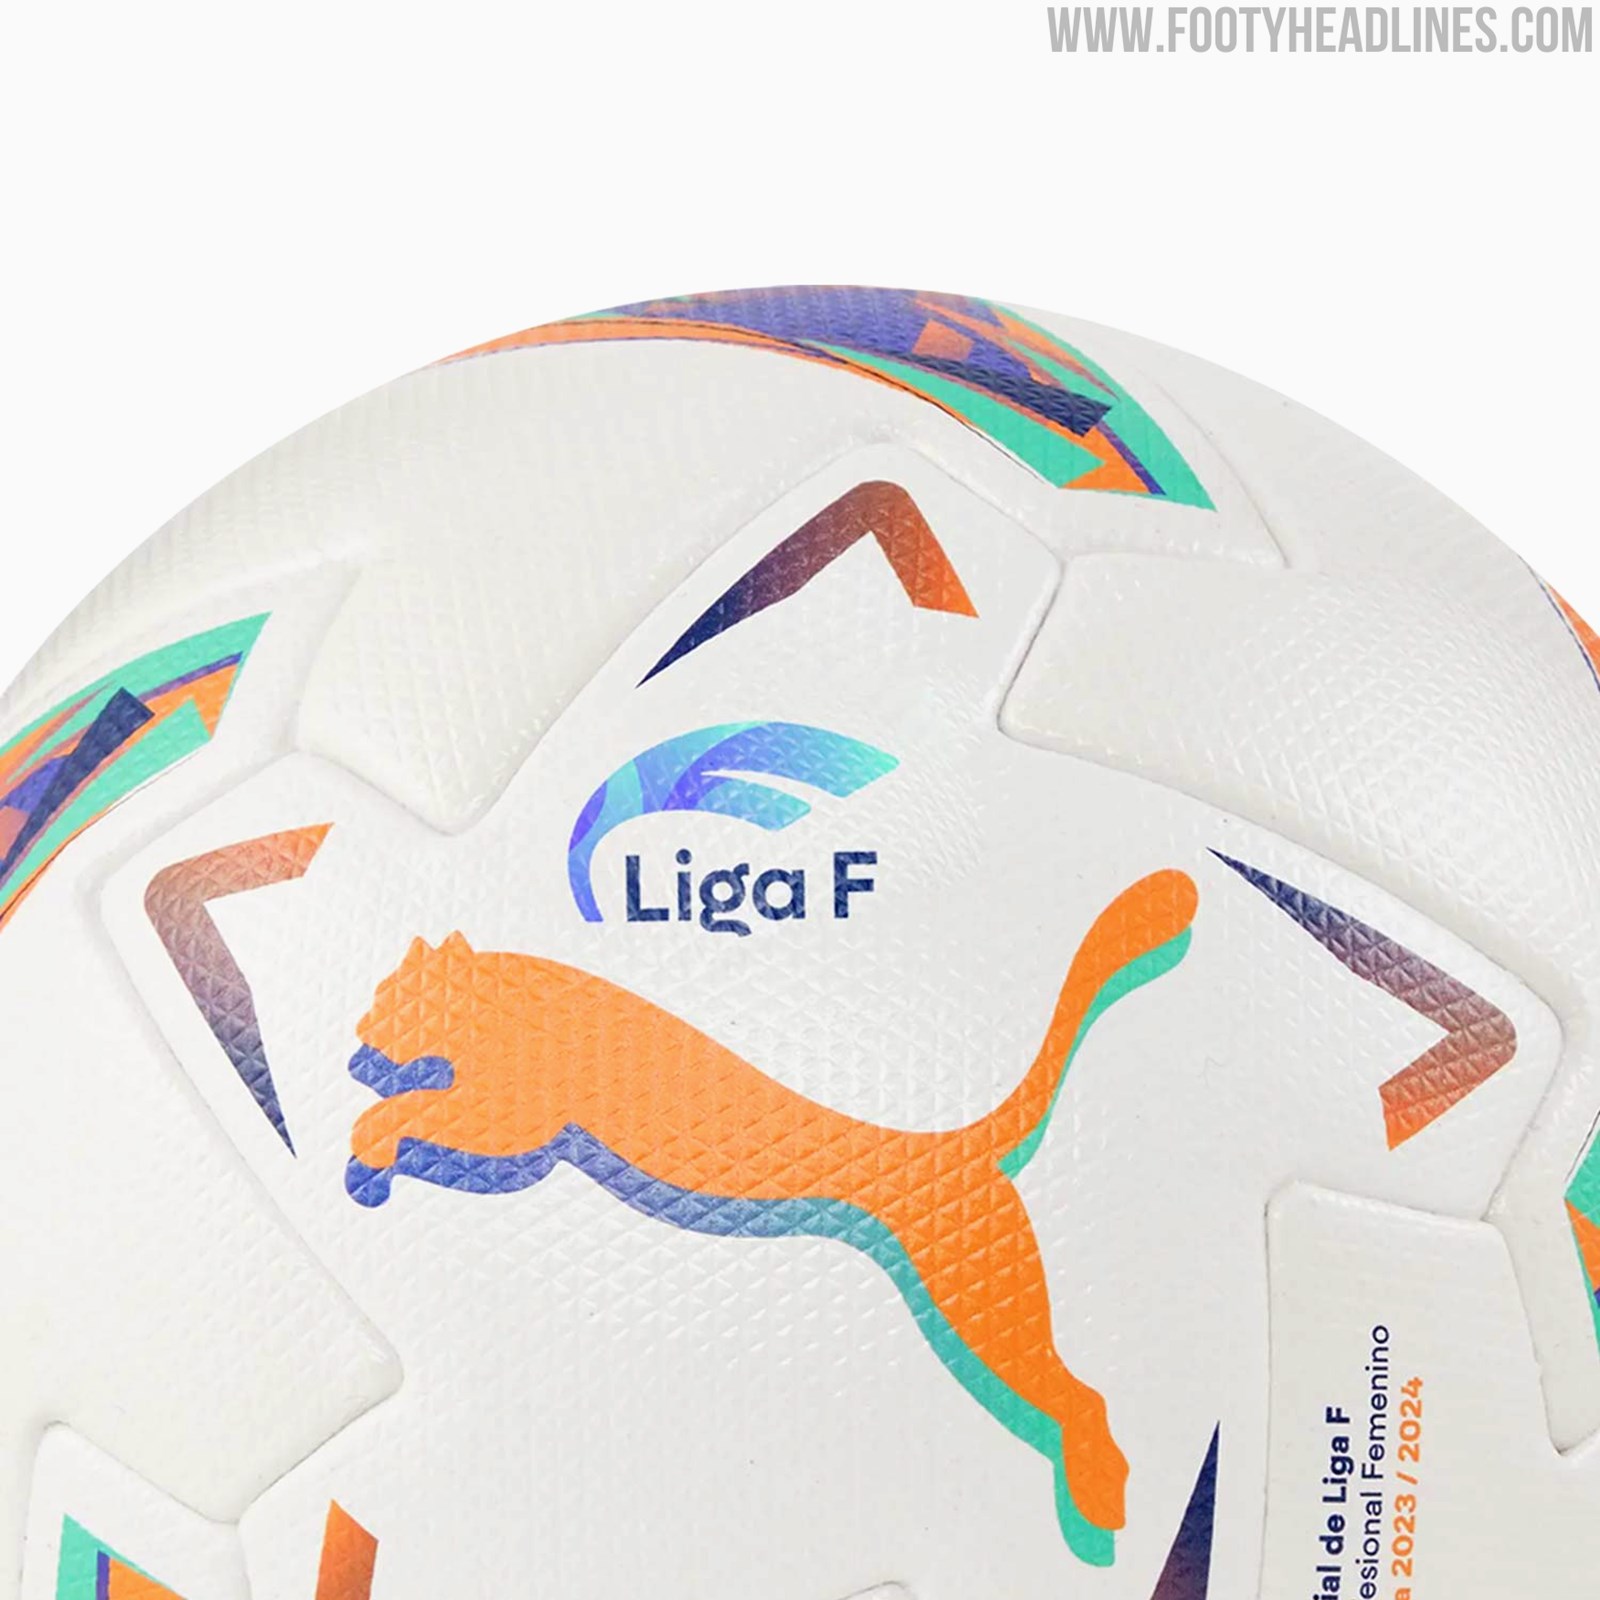 Puma Liga F 23-24 Ball Released - Footy Headlines